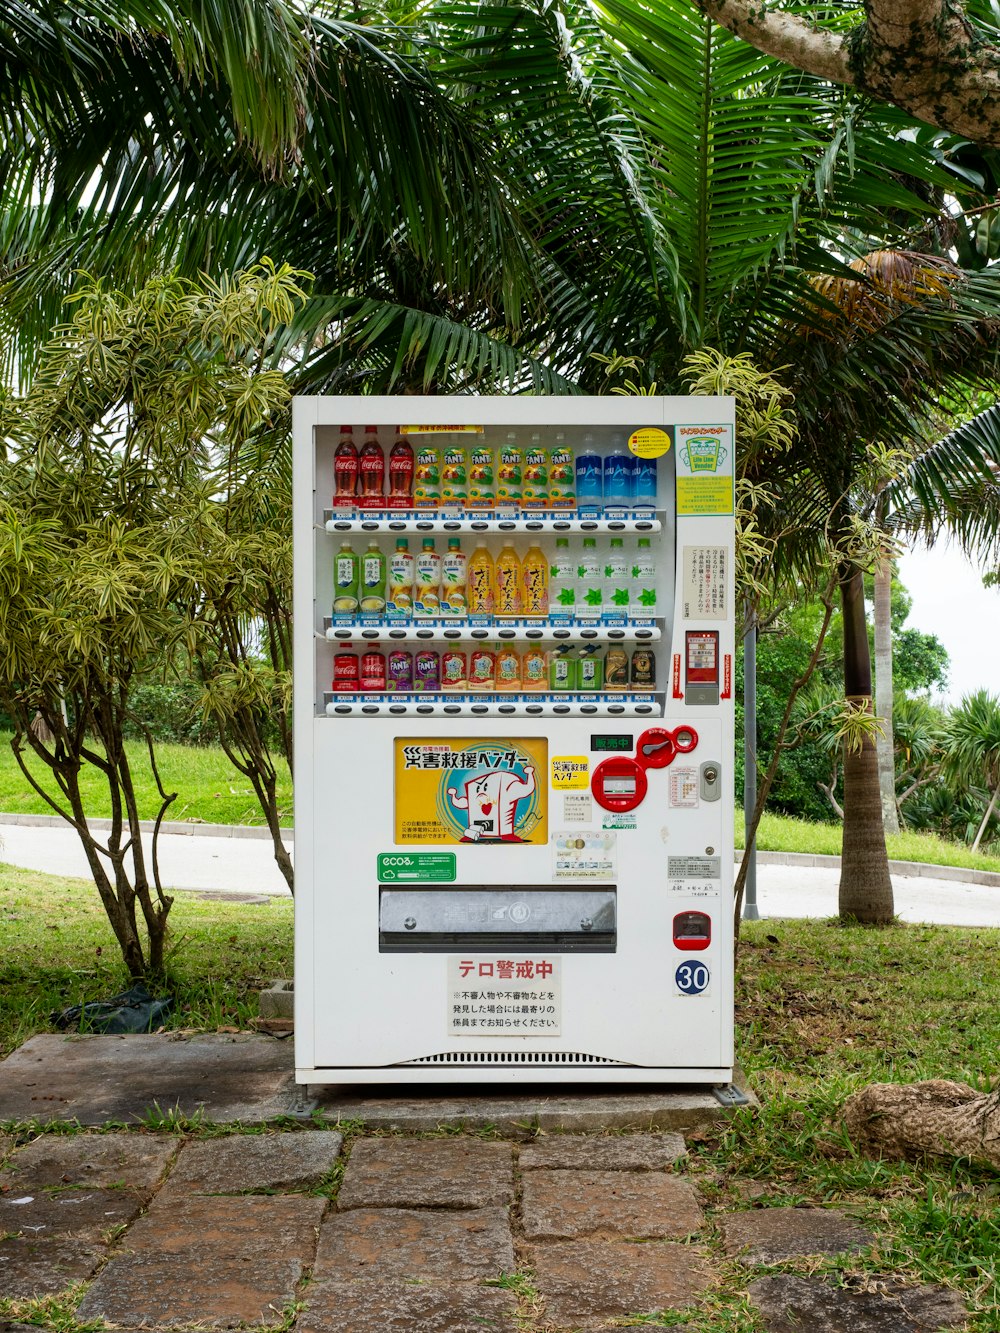 una máquina expendedora en medio de un parque